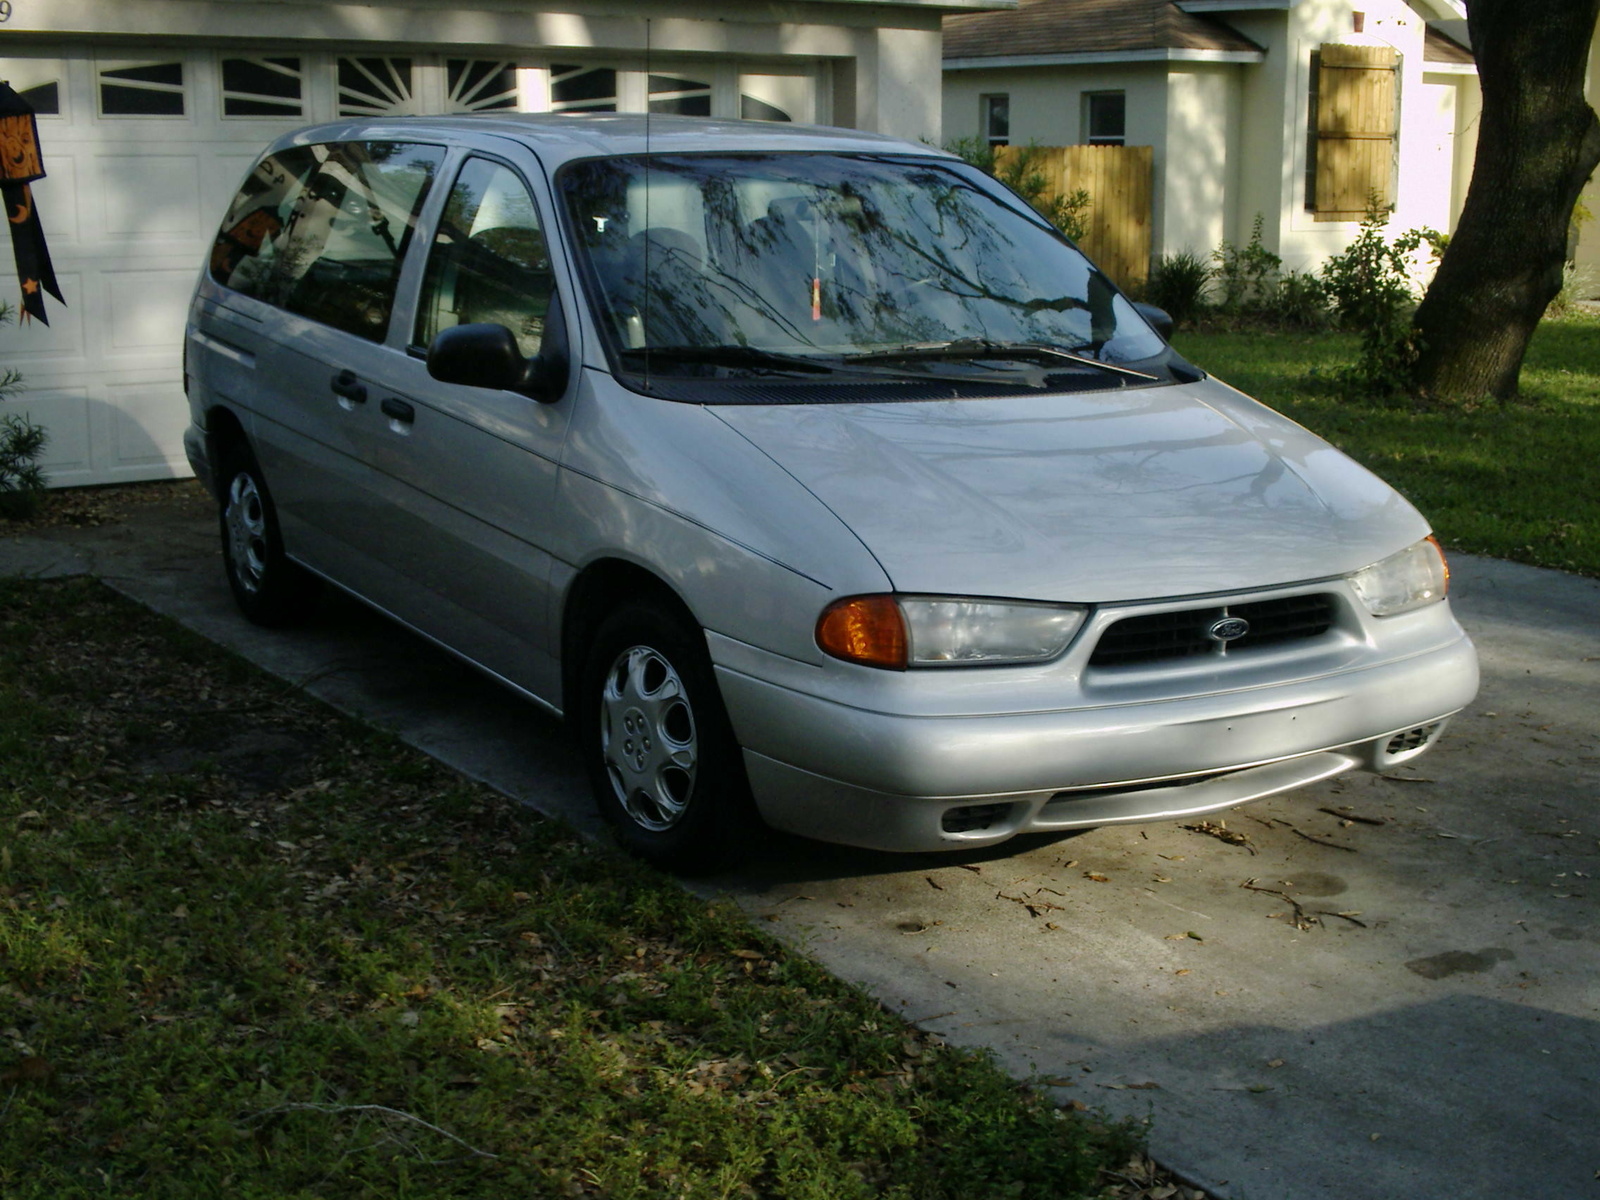 1996 Ford windstar gl minivan altinator